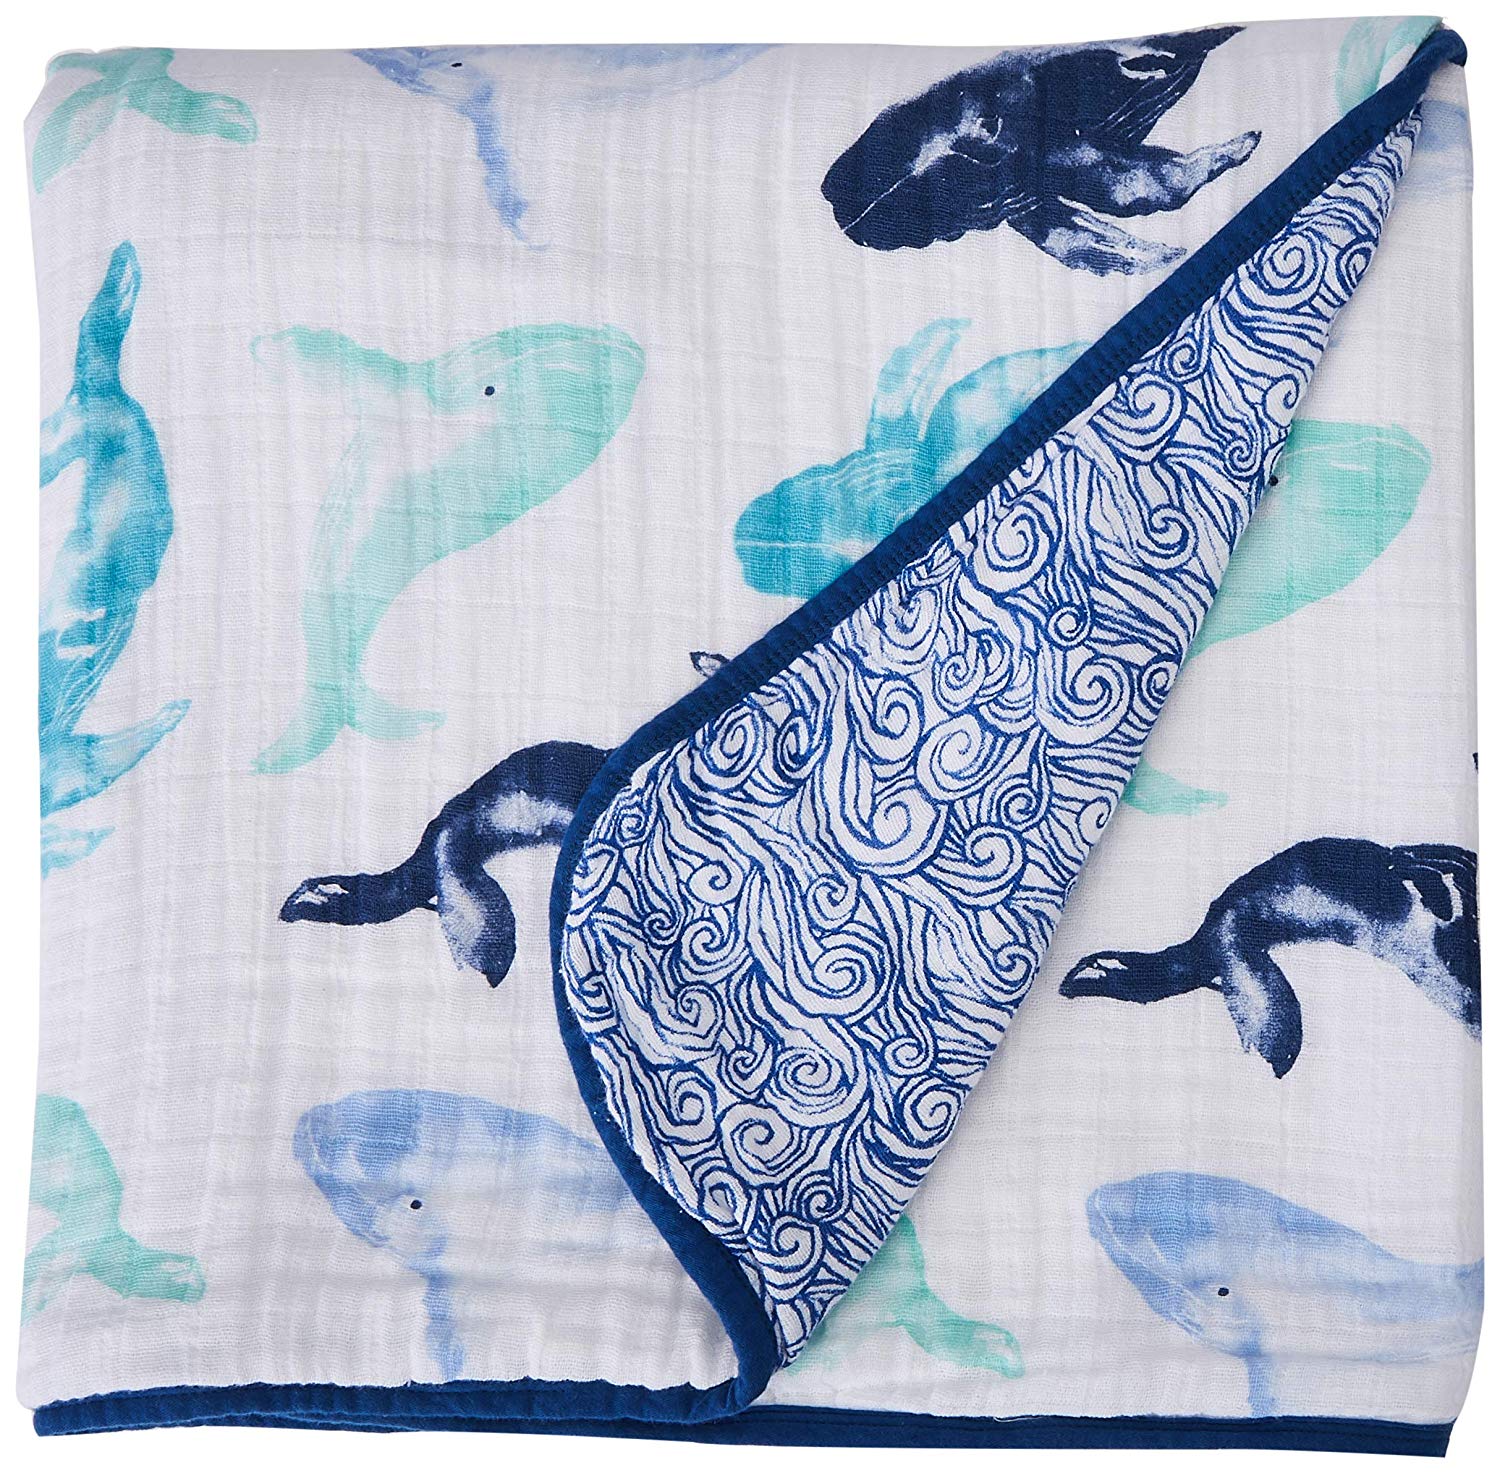 aden + anais Dream Blanket, 4 Layers, 100% Cotton Muslin, 120 cm x 120 cm, Seafaring - Whale